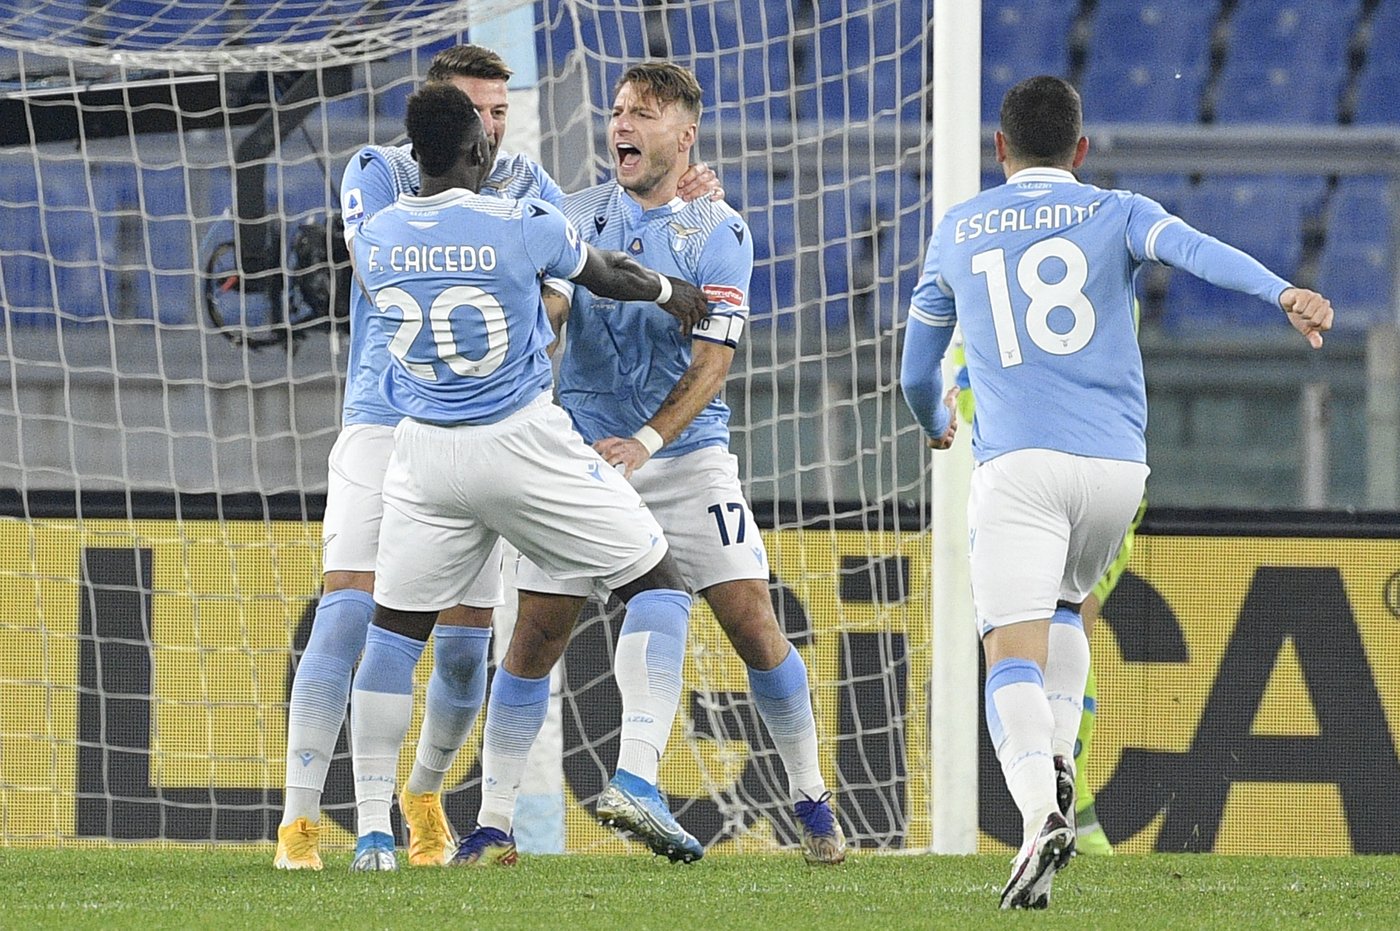 La cronaca di Lazio-Napoli 2-0. I biancocelesti si rilanciano battendo i  partenopei all'Olimpico - Lazionews.eu